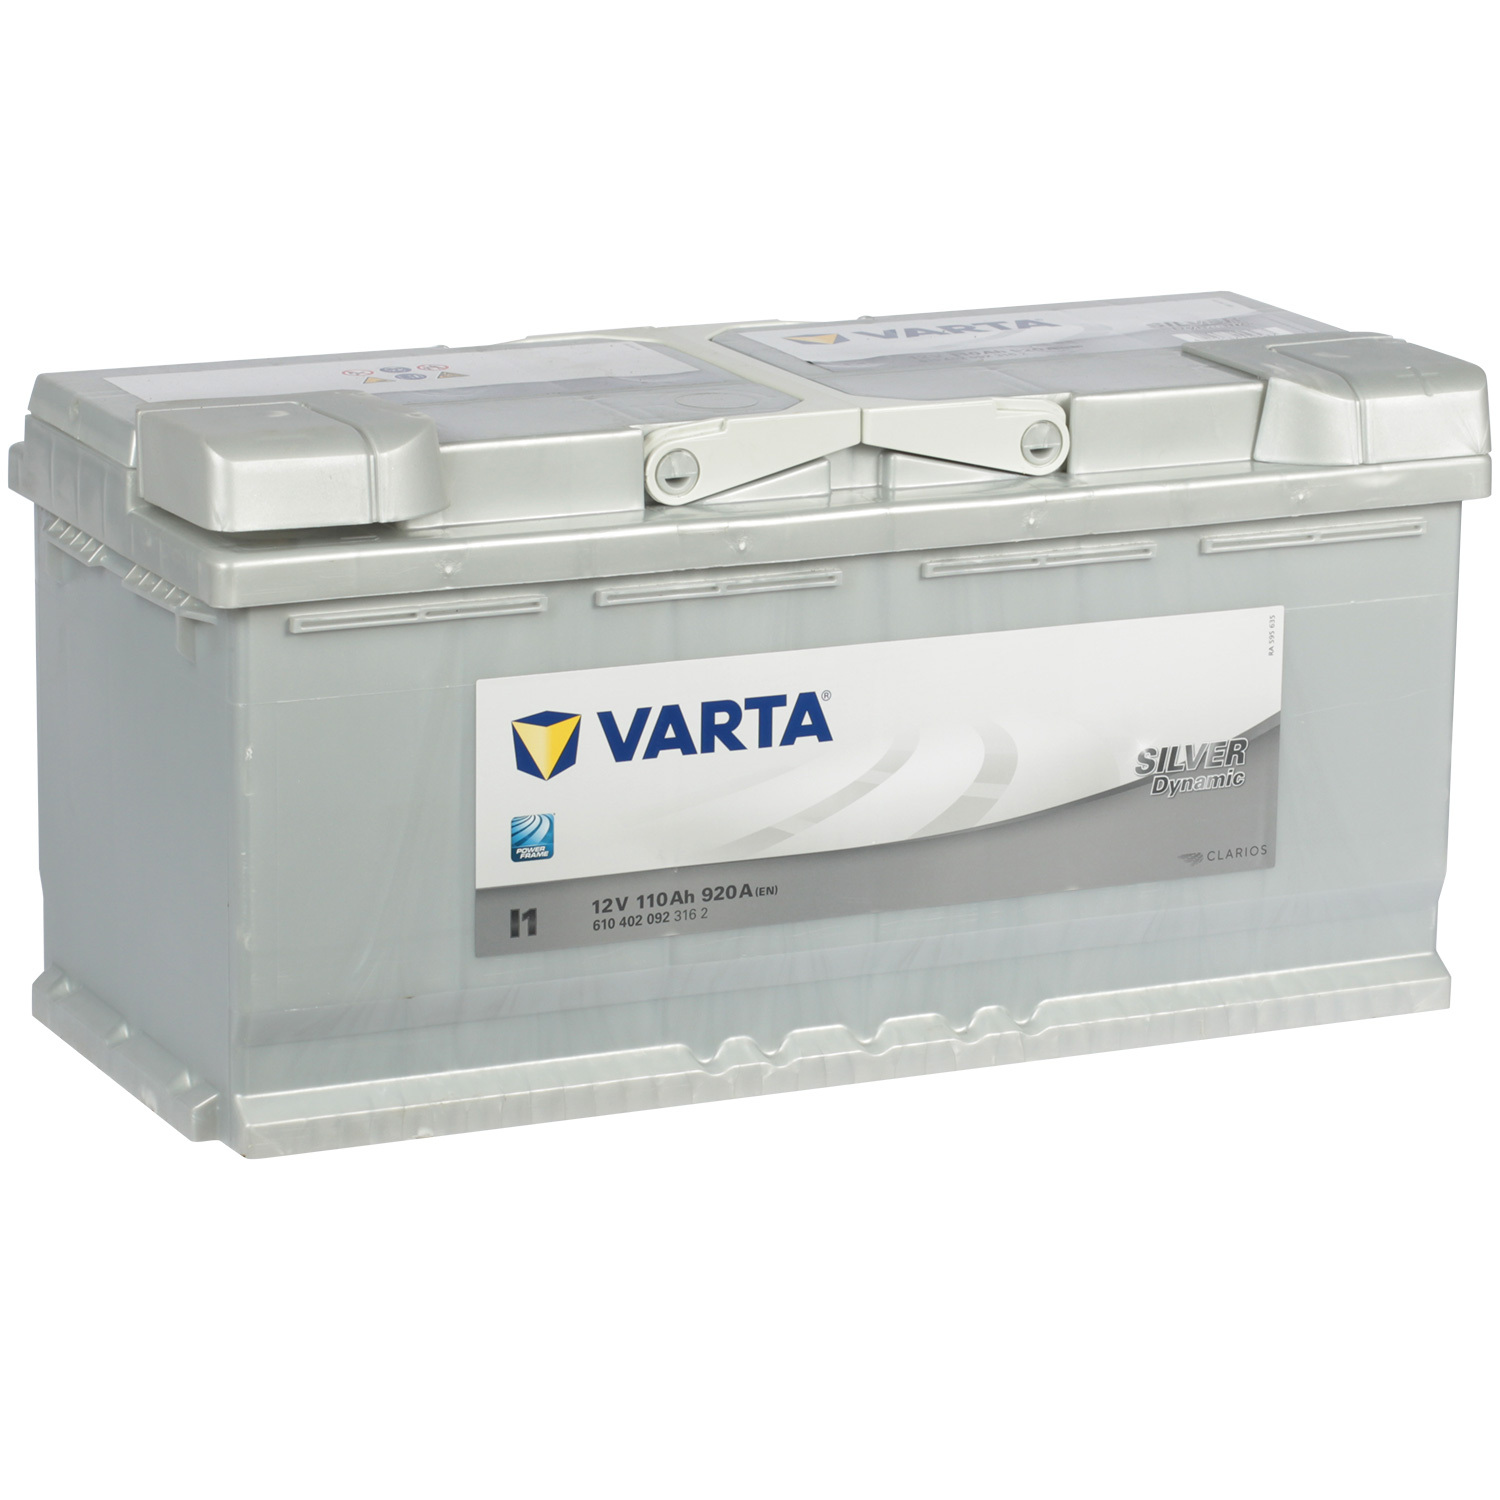 Varta Автомобильный аккумулятор Varta Silver Dynamic I1 110 Ач обратная полярность L6